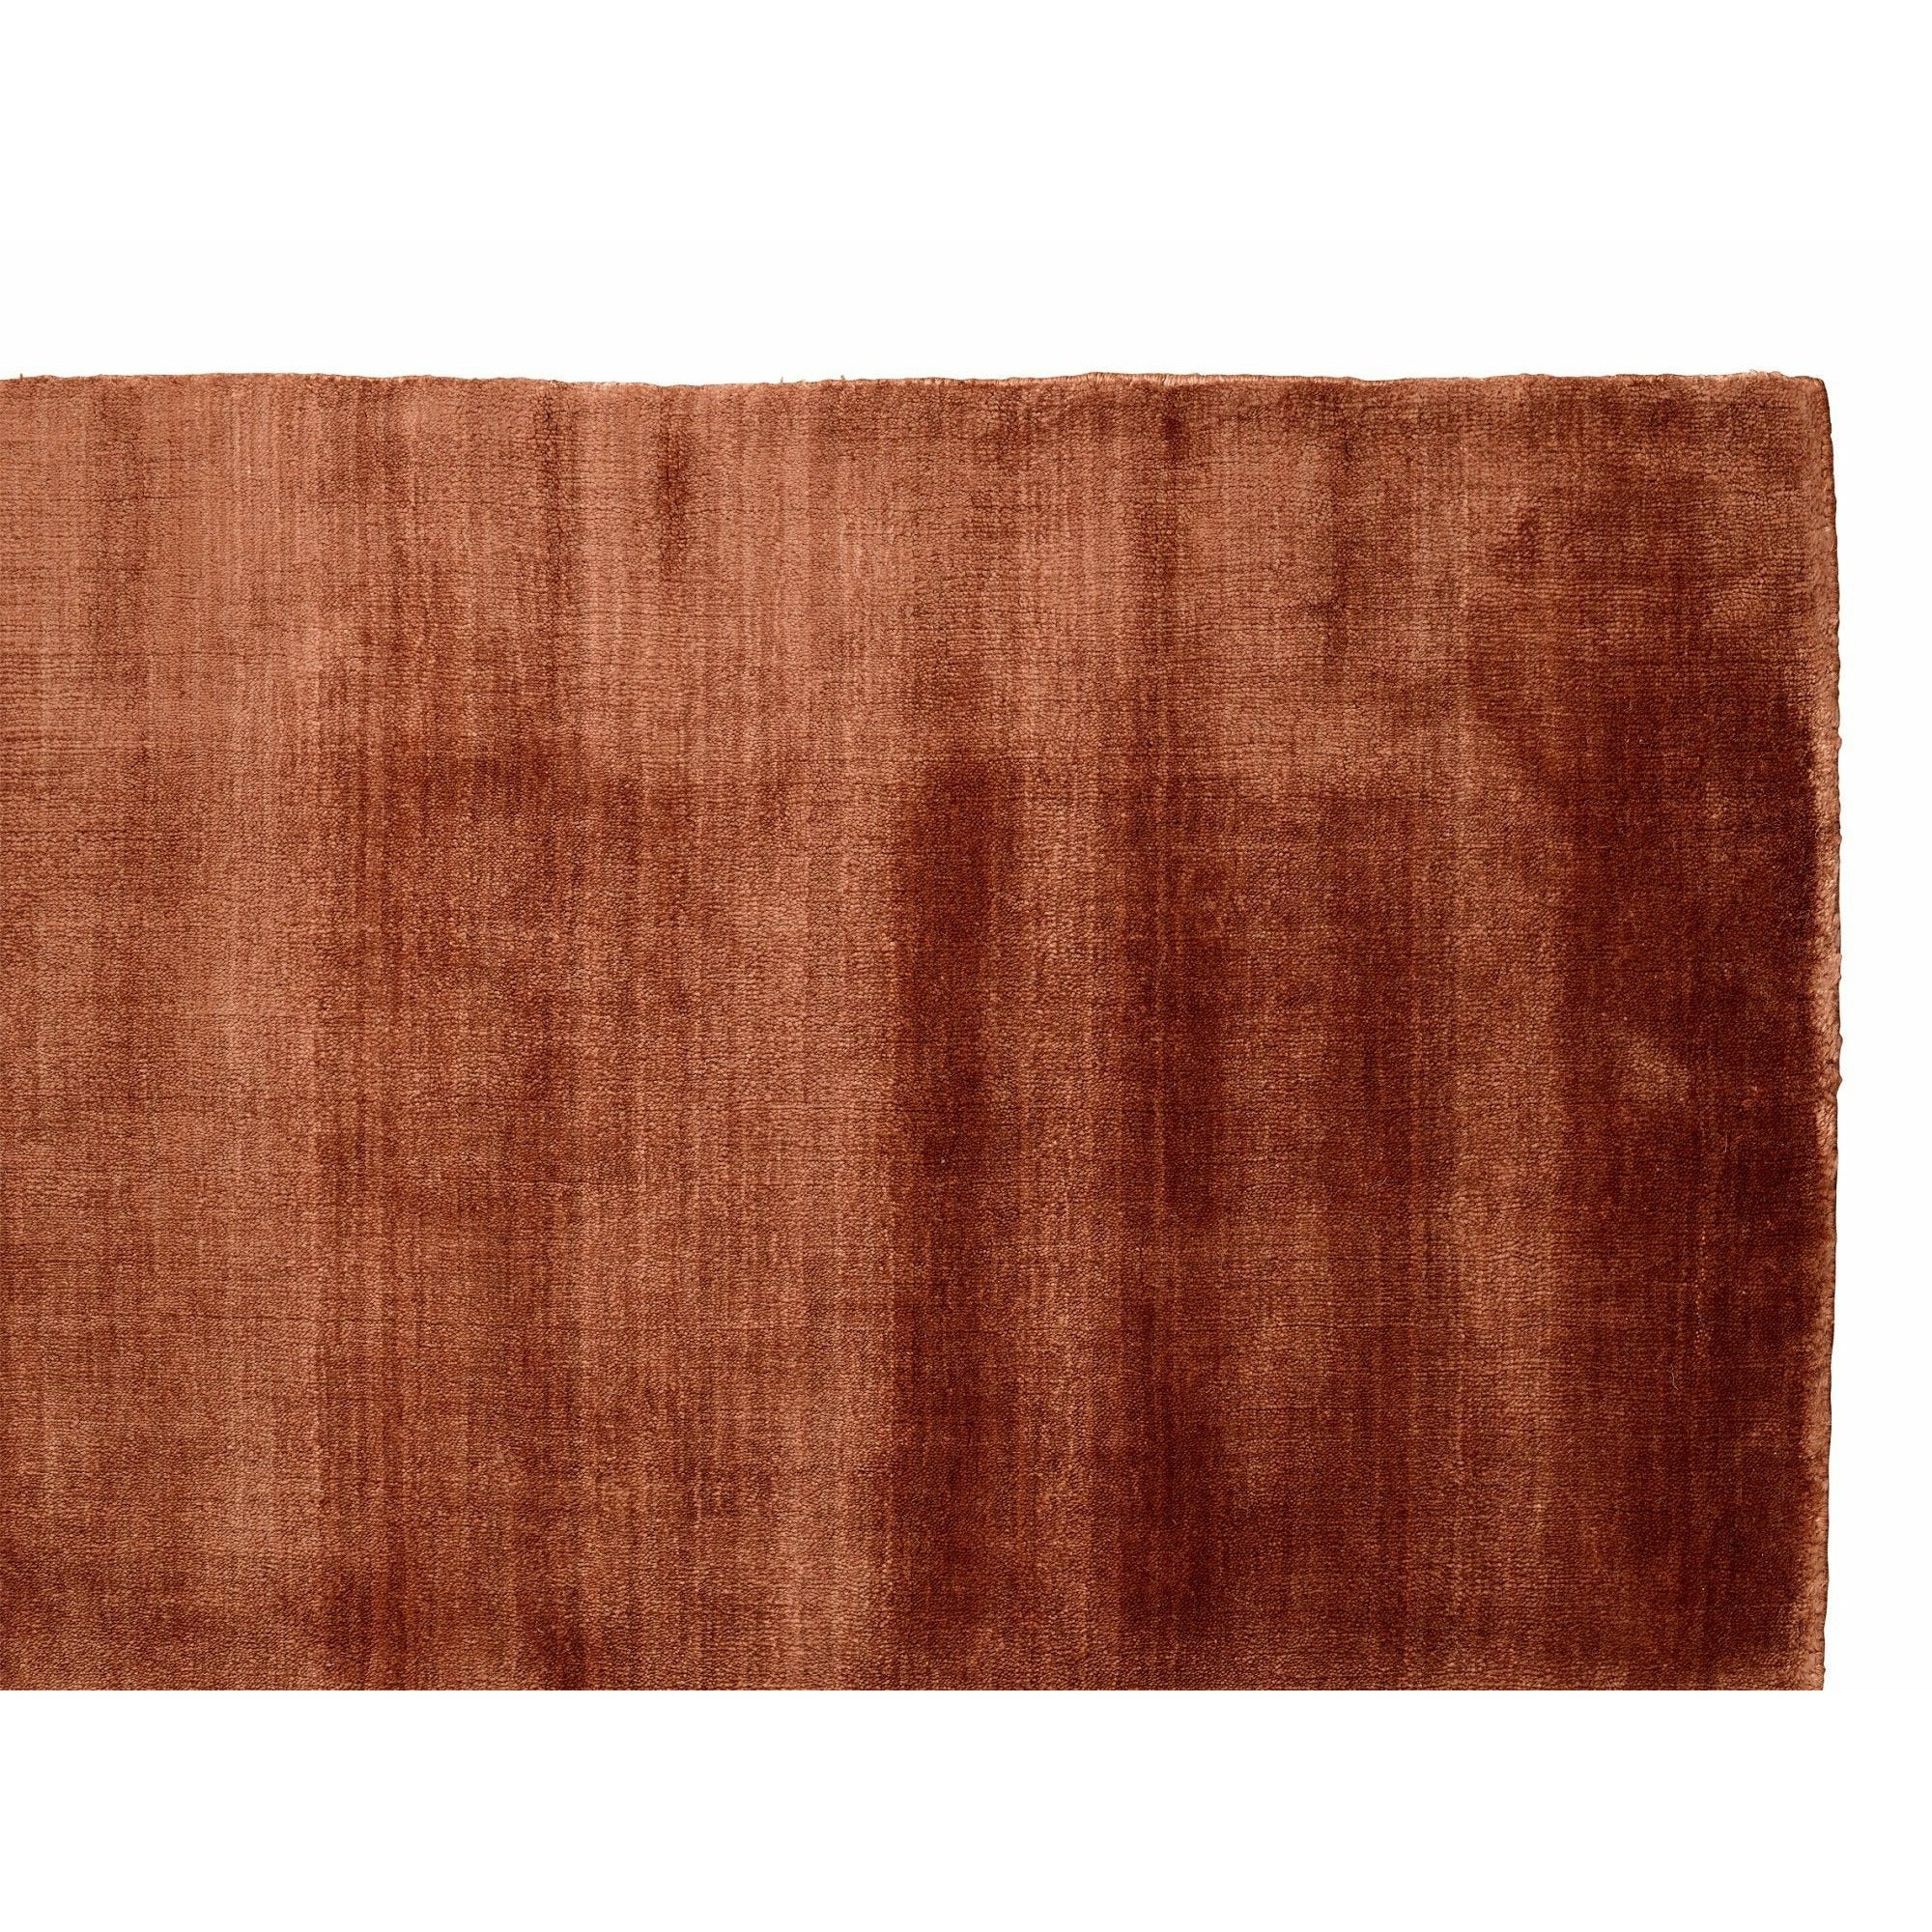 Massimo Bambus Teppich Kupfer, 200x300 cm